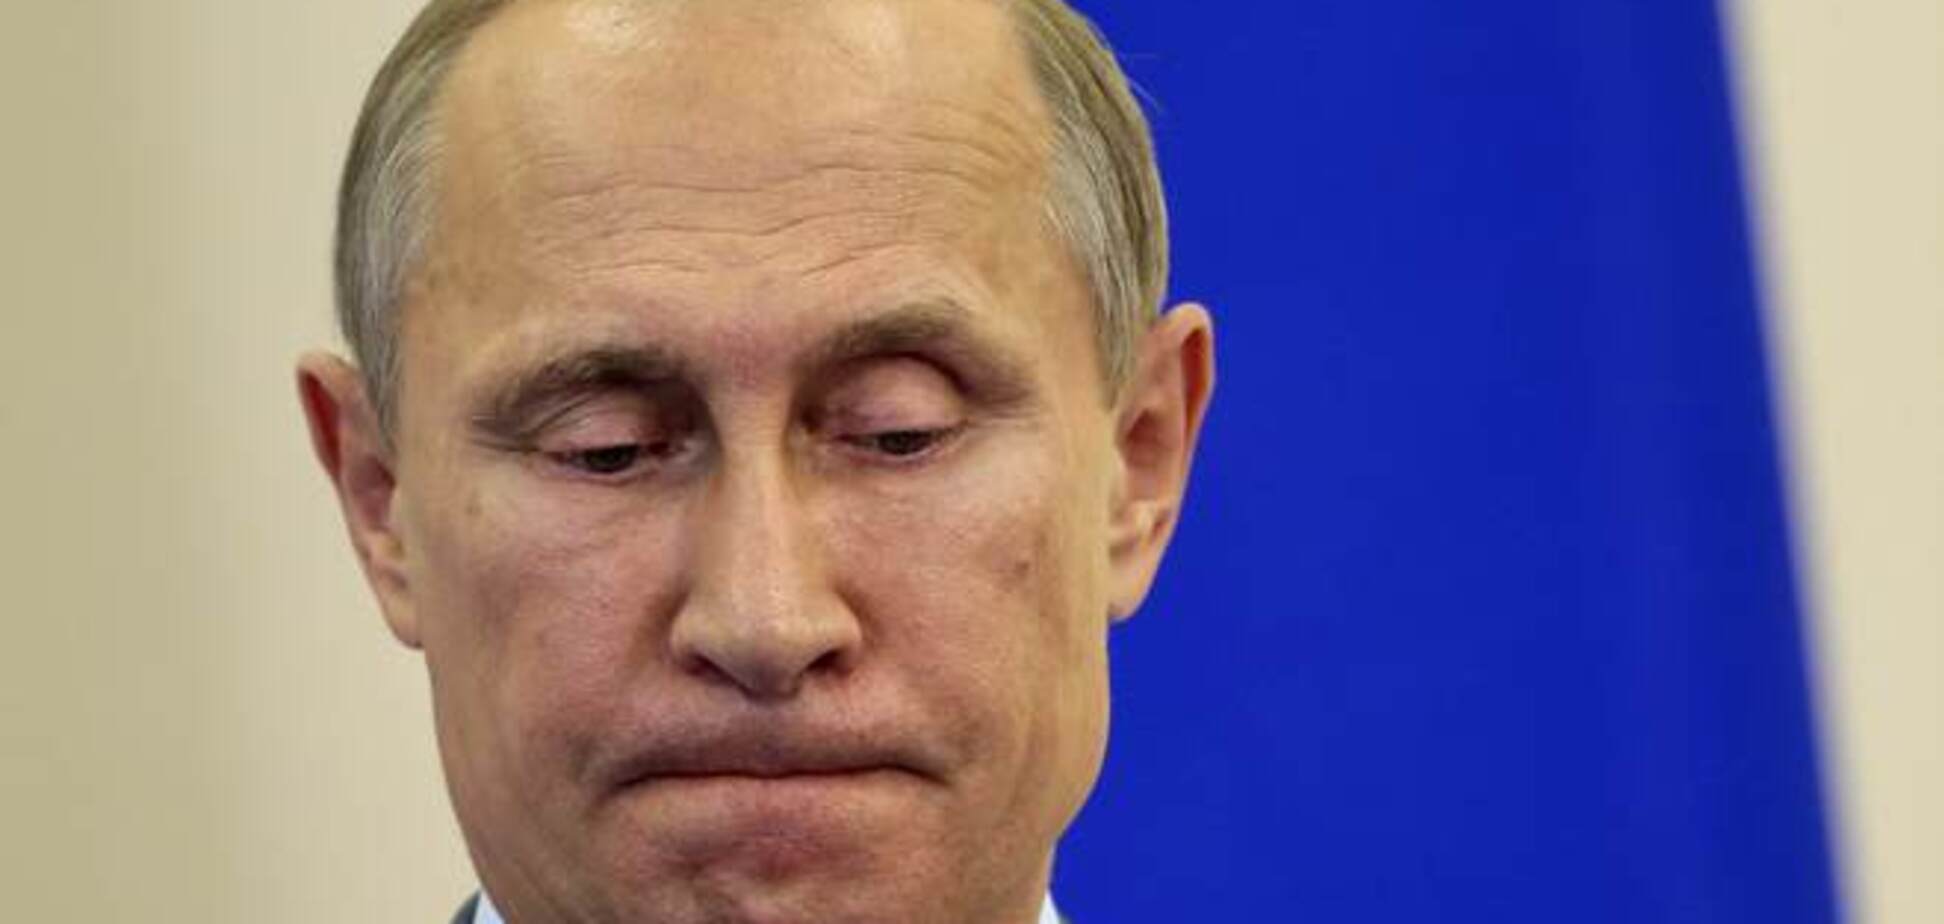 Рубль разрушает миф о непобедимом сильном Путине – The Wall Street Journal